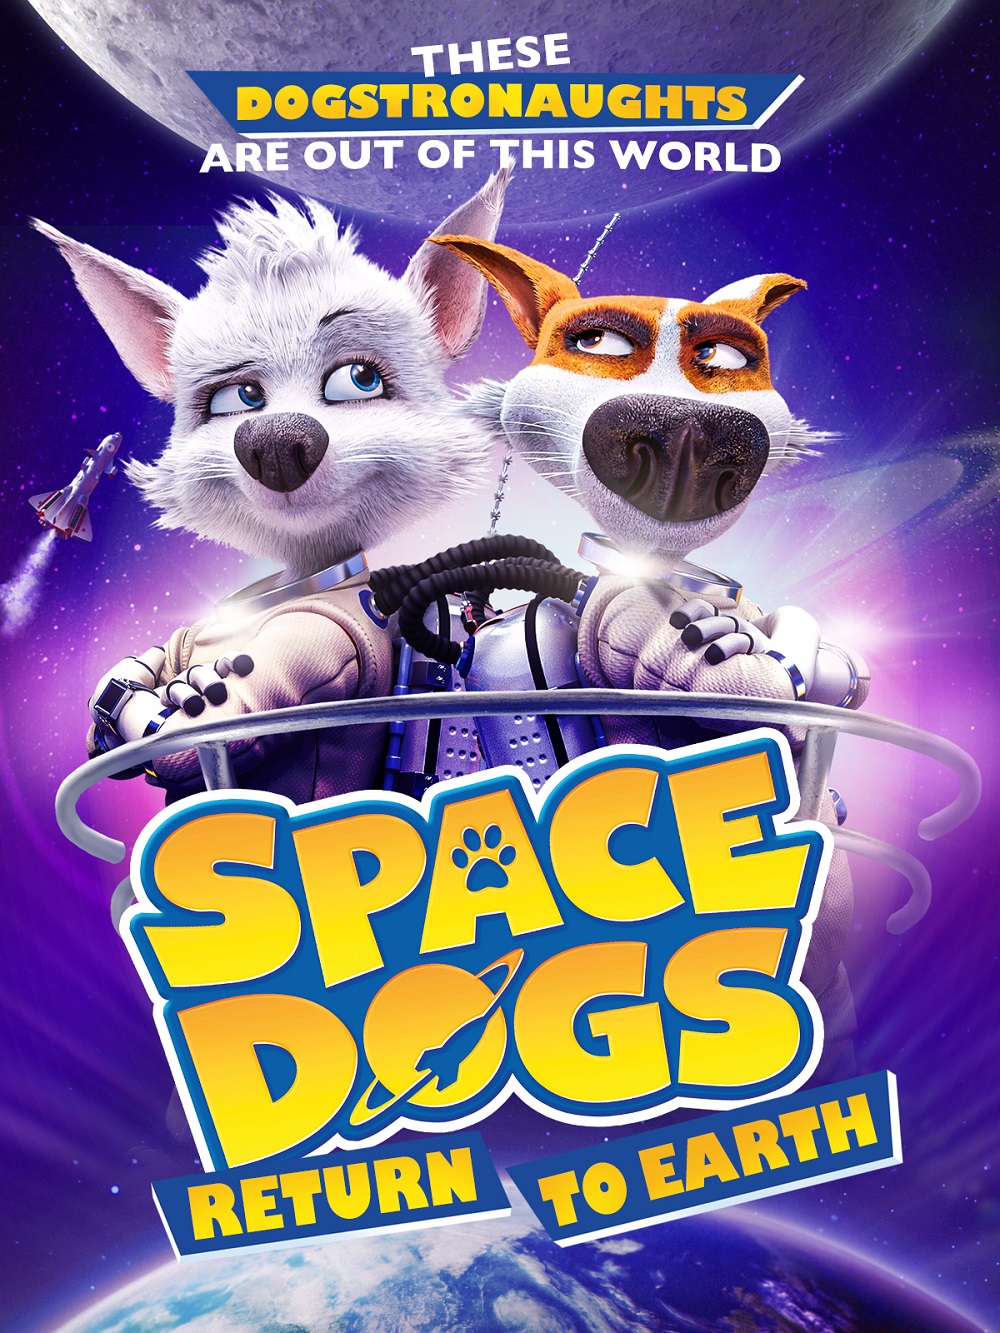 ดูการ์ตูน Space Dogs: Tropical Adventure (2020)